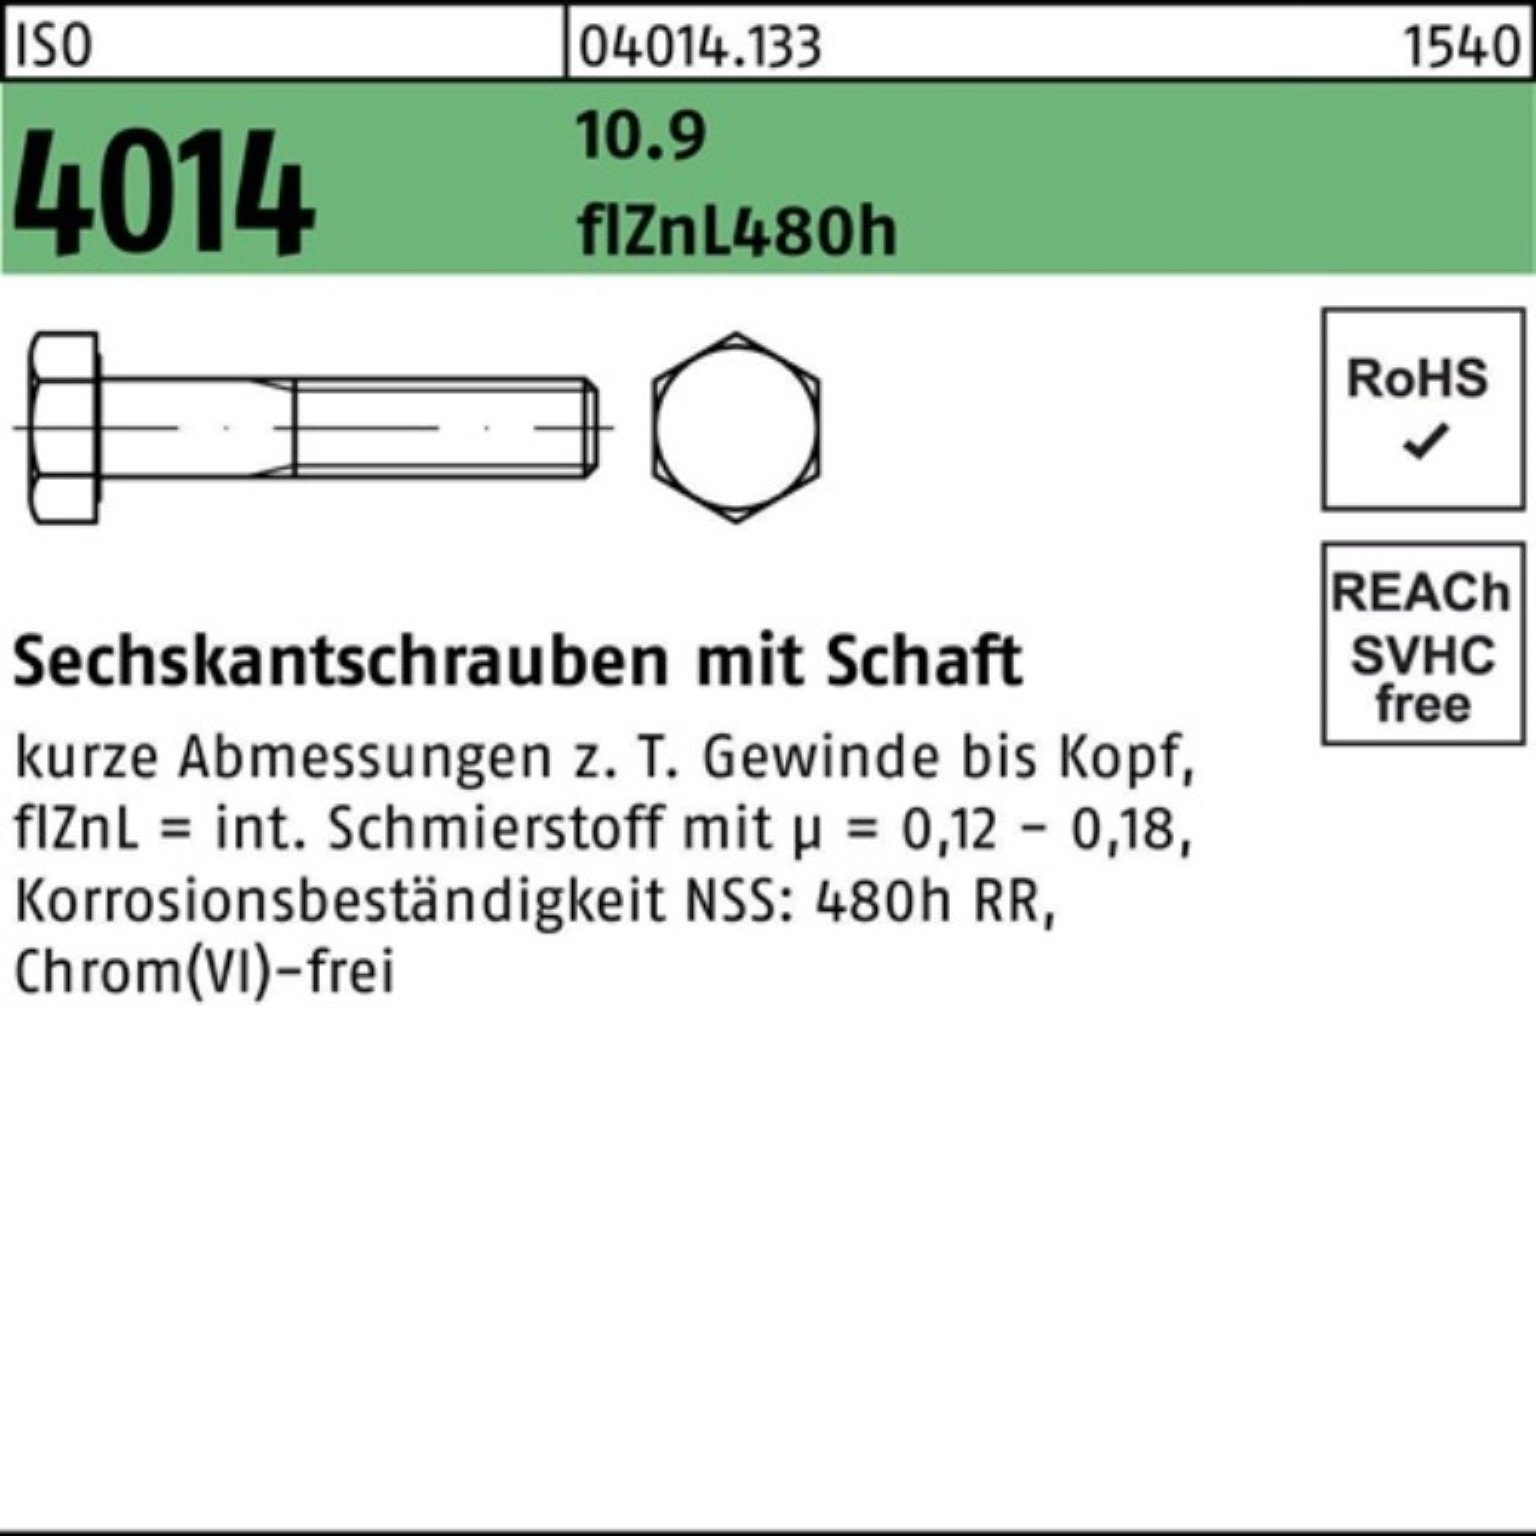 Bufab Schaft 100er 80 Sechskantschraube 10.9 Pack 4014 zinklamellen M12x ISO Sechskantschraube